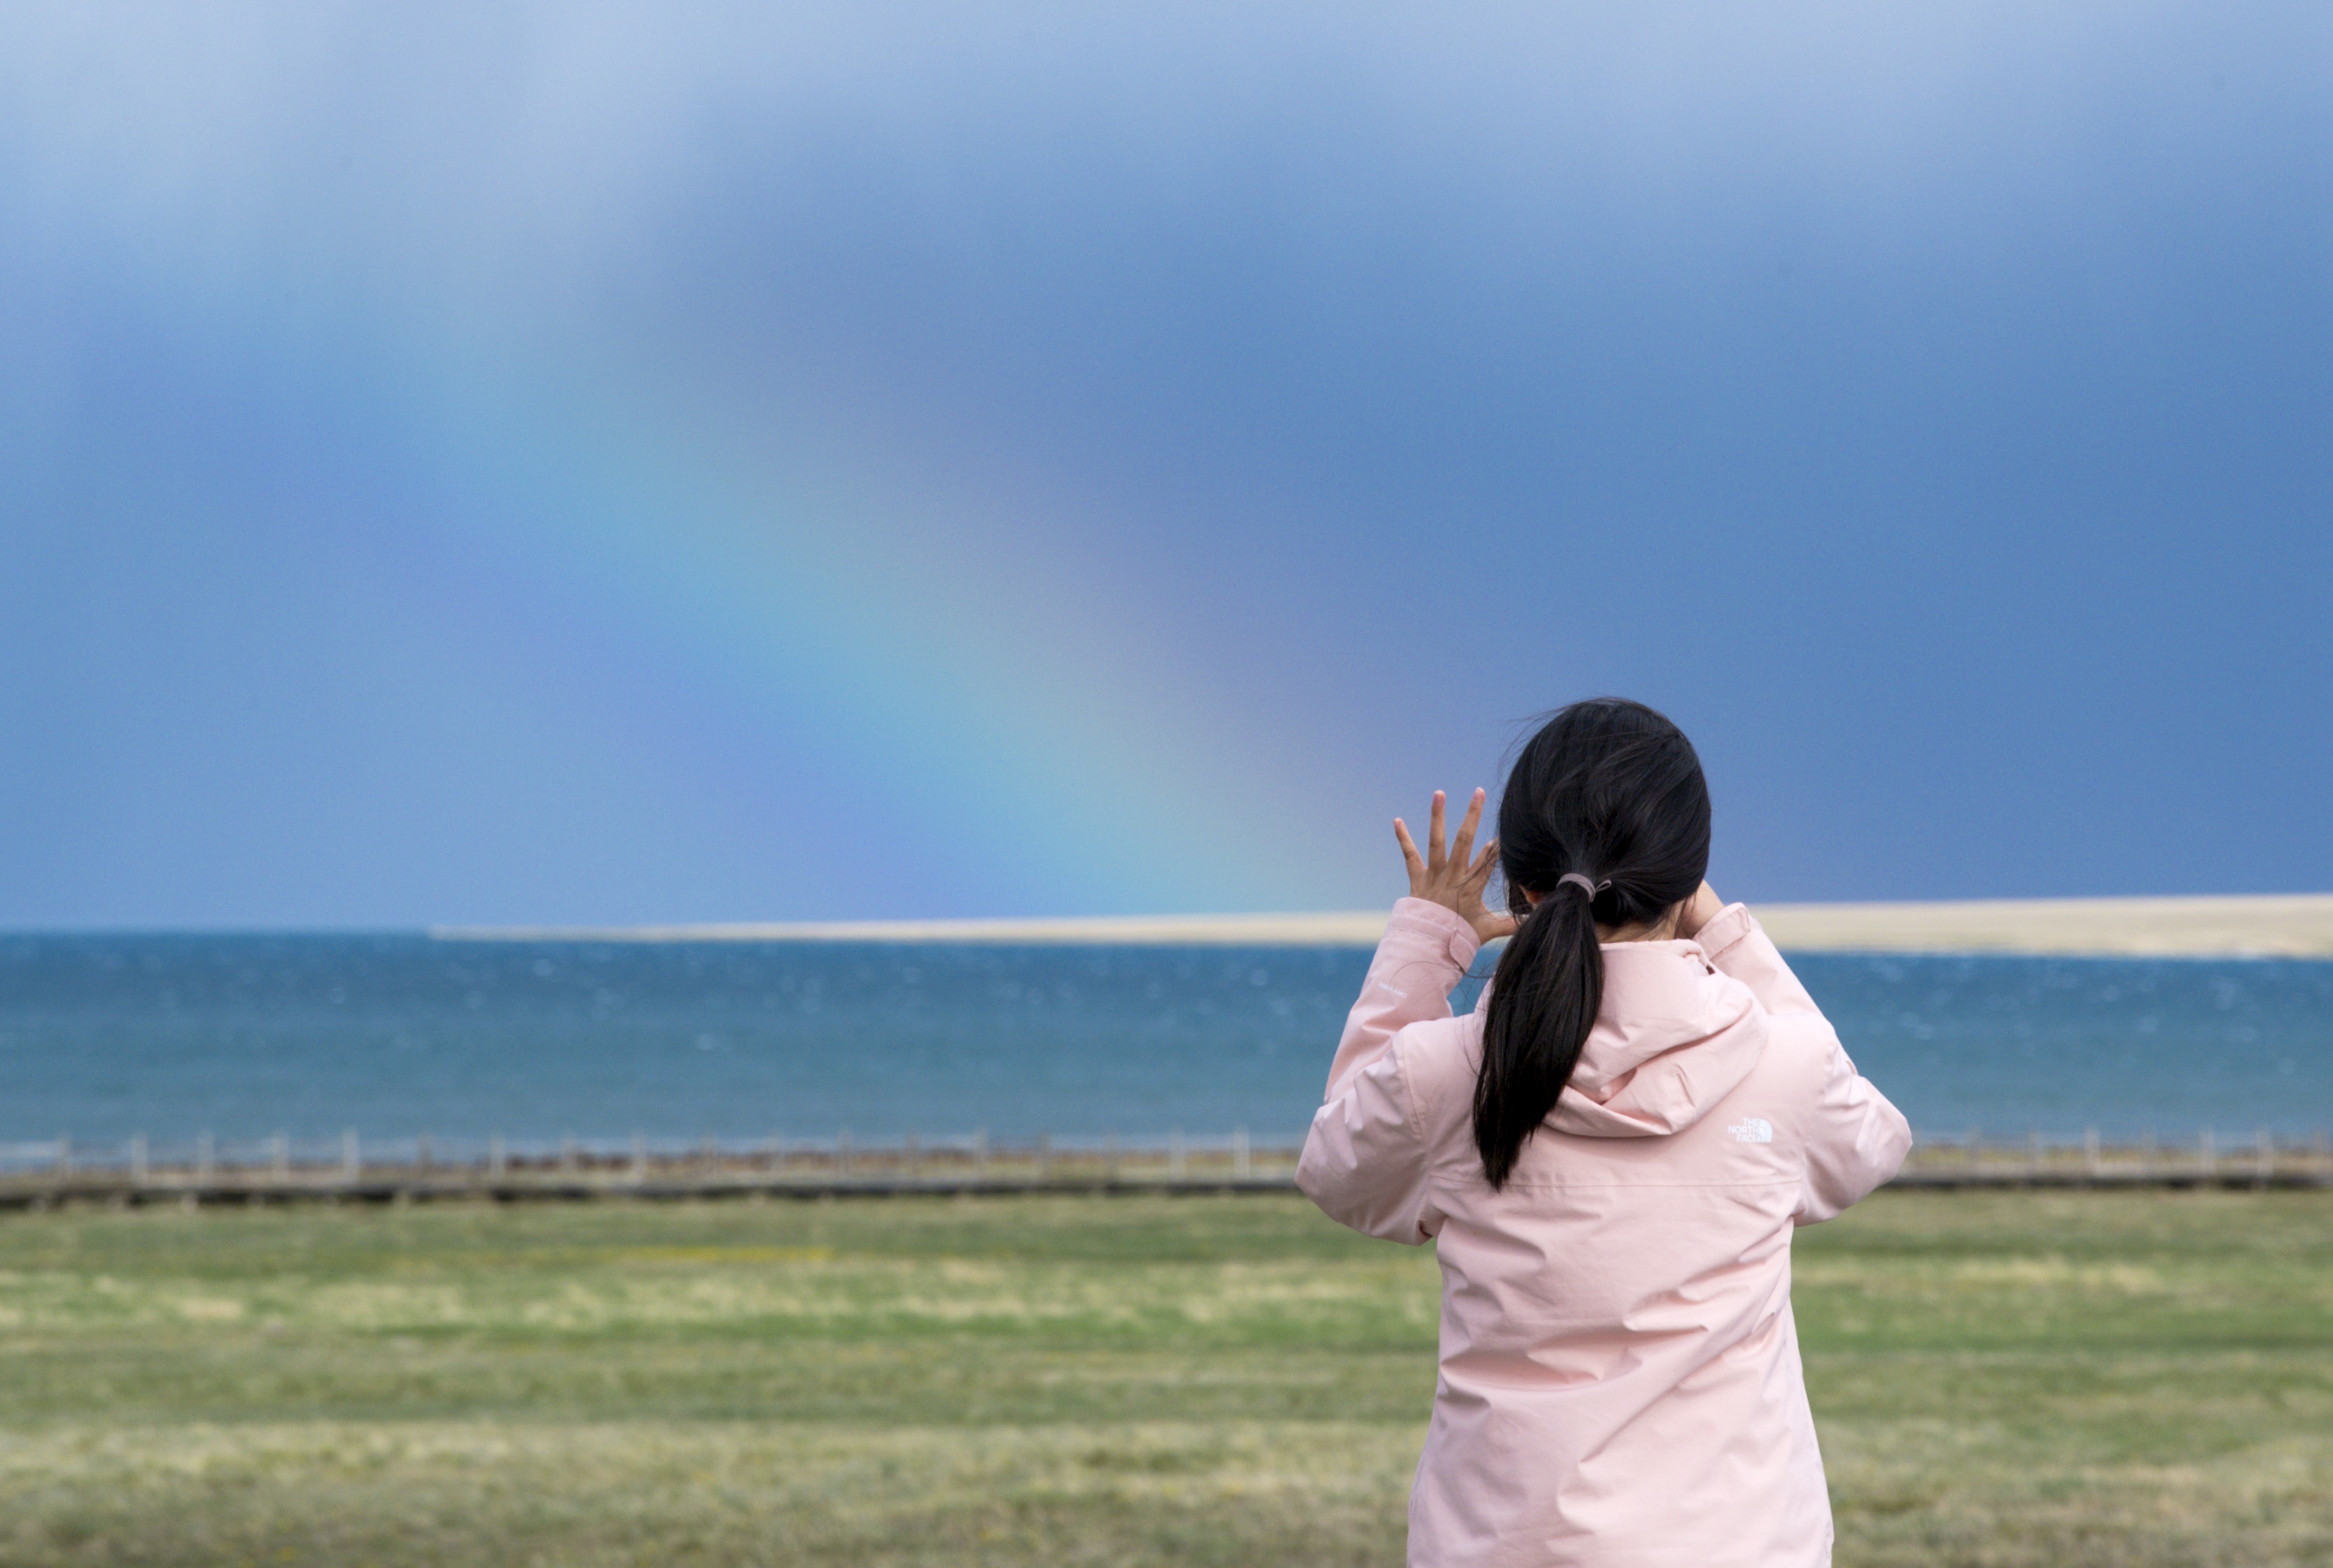 游客在赛里木湖边拍摄彩虹（5月21日摄）。（摄影：新华社记者王菲）